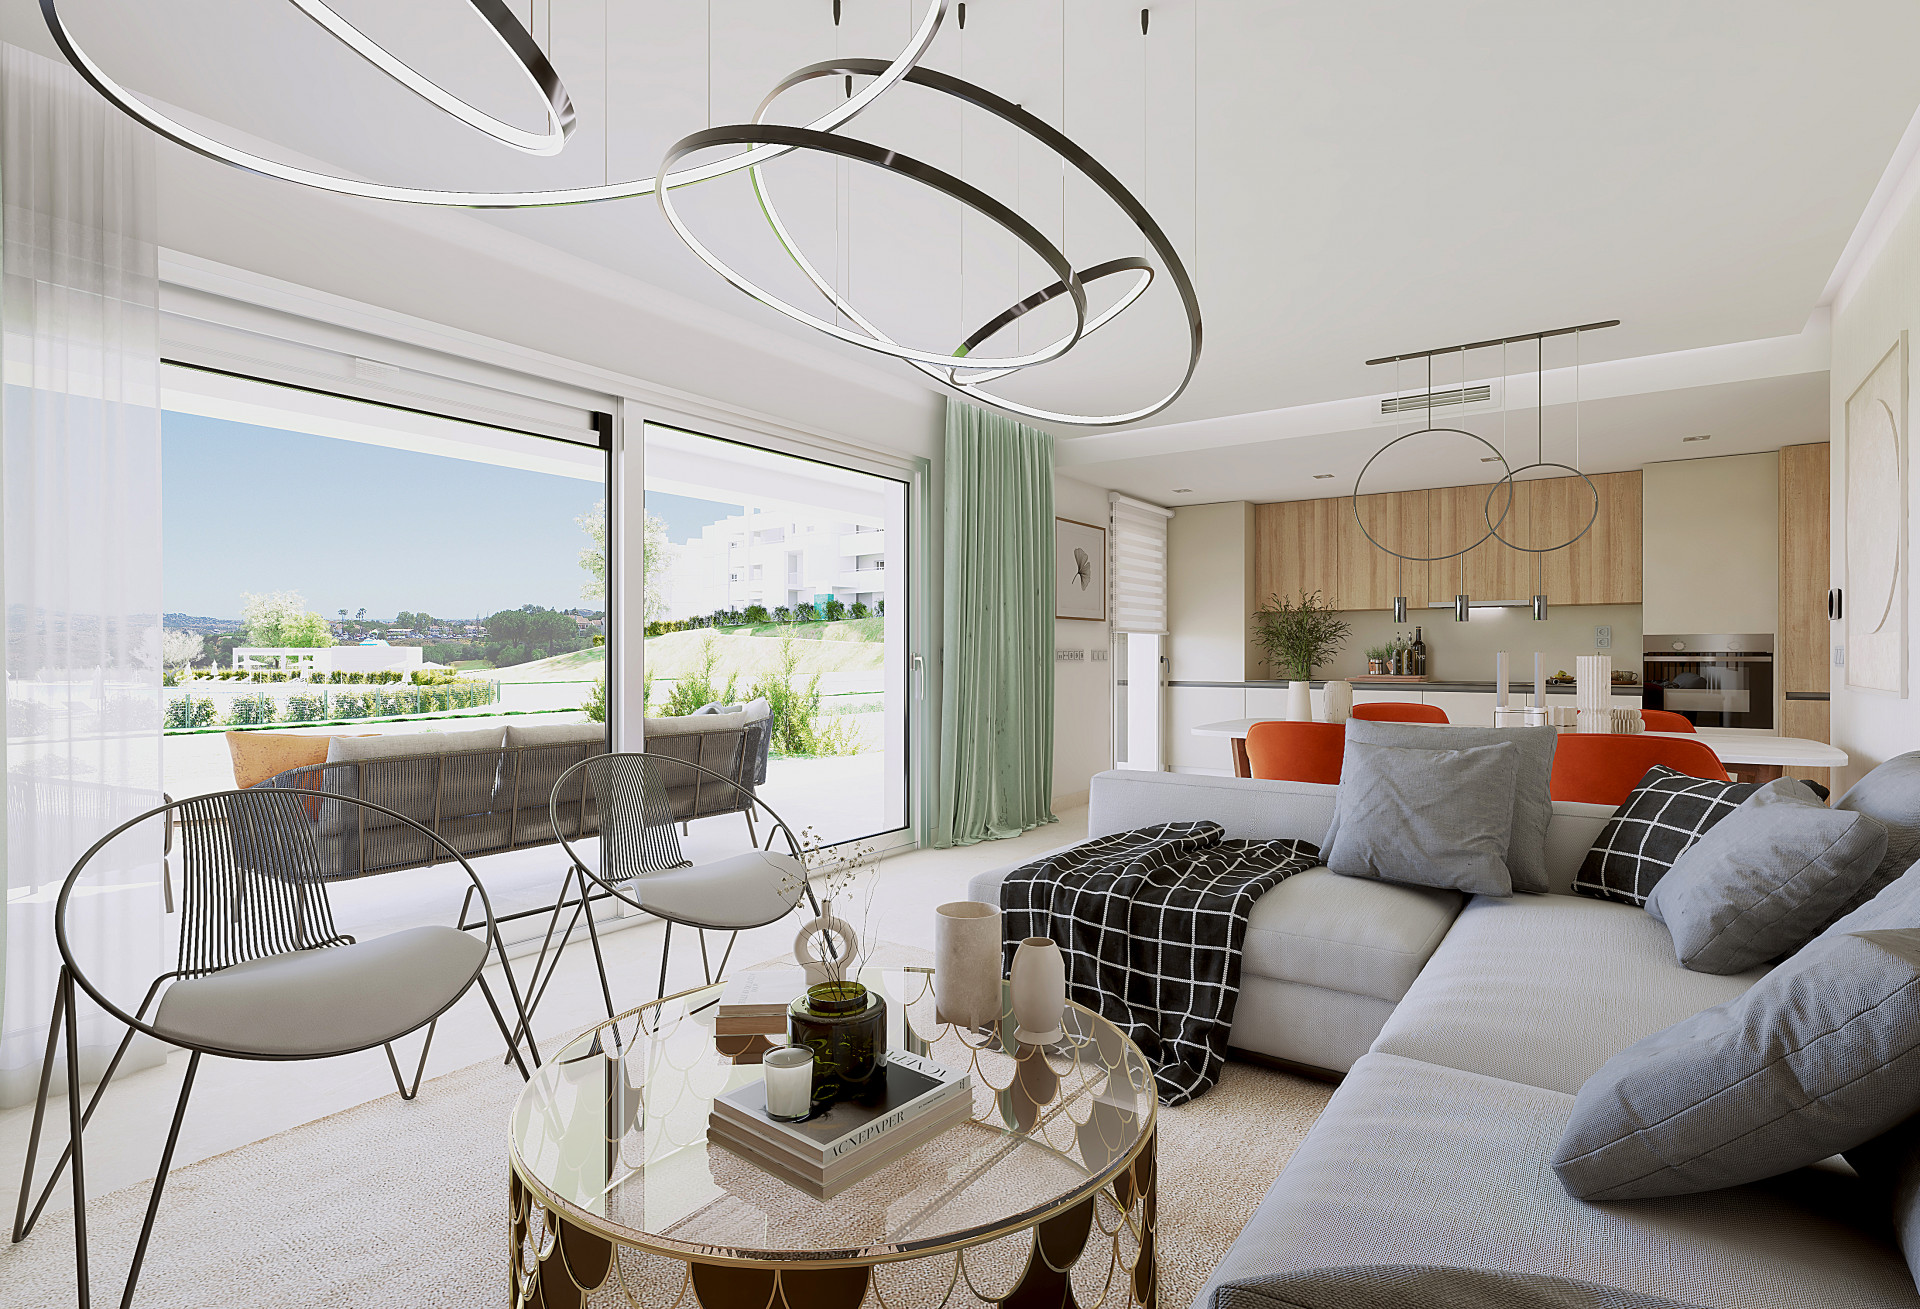 Three bedroom ground floor flat wit terrace in La Cala Golf Resort in Mijas.